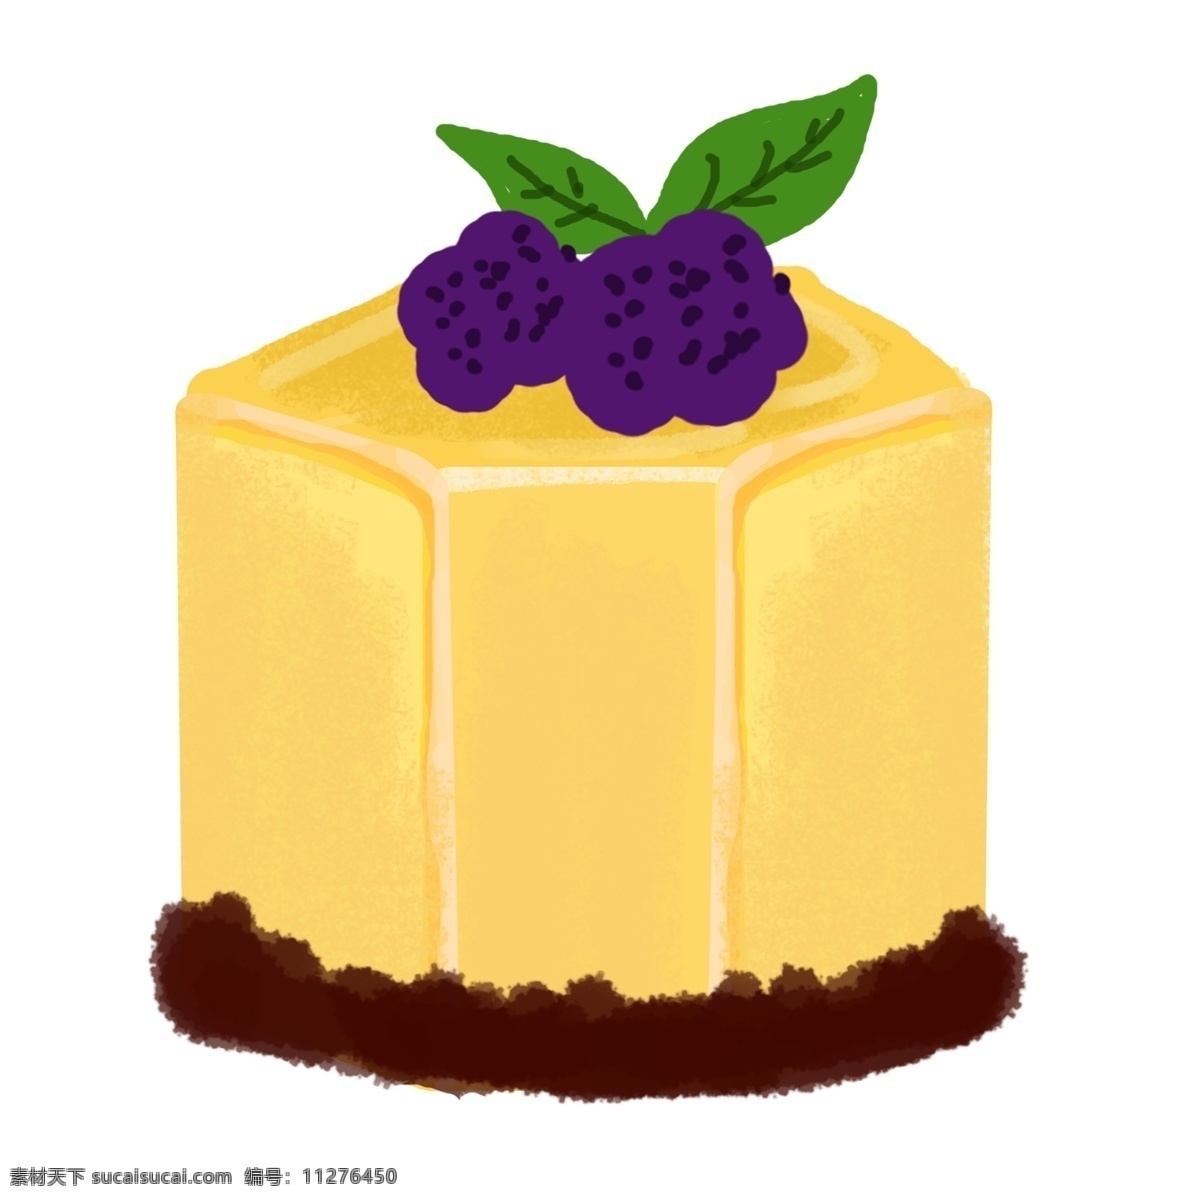 柠檬 果酱 蛋糕 小 甜品 手绘 插画 水果甜品 水果小蛋糕 咖啡甜品 手绘甜点 蓝莓小蛋糕 切块小蛋糕 手工甜品